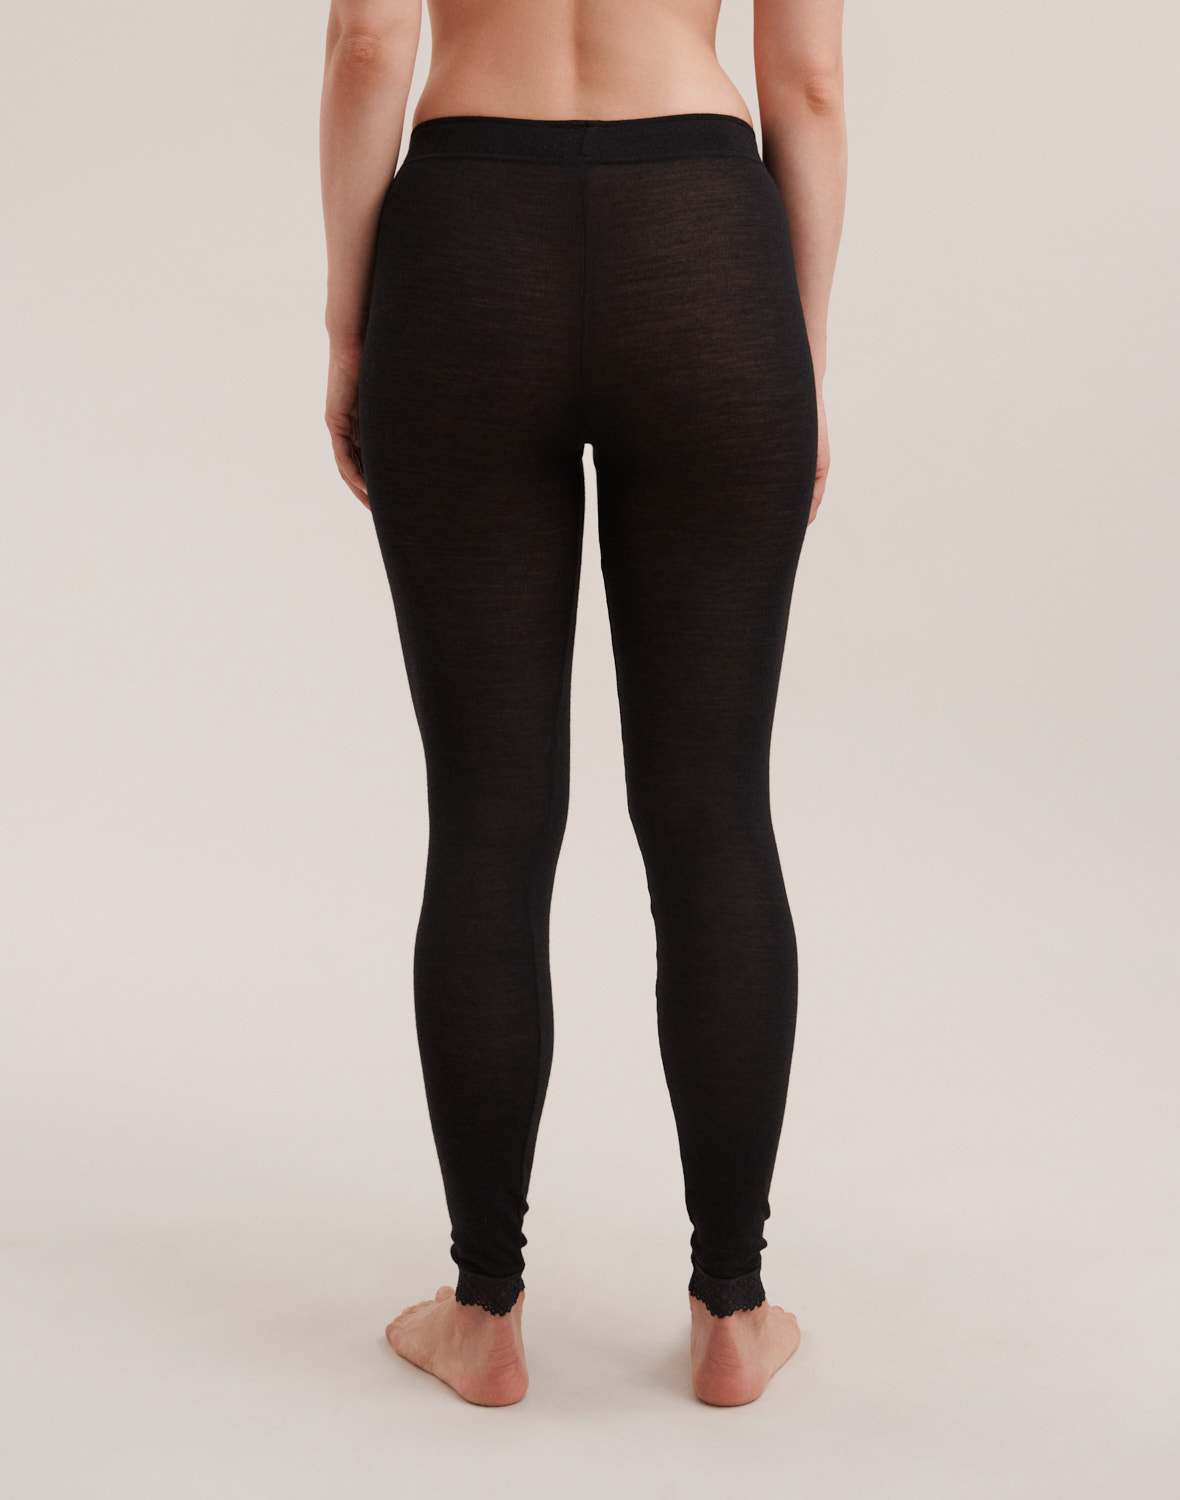 Black leggings in organic wool/silk